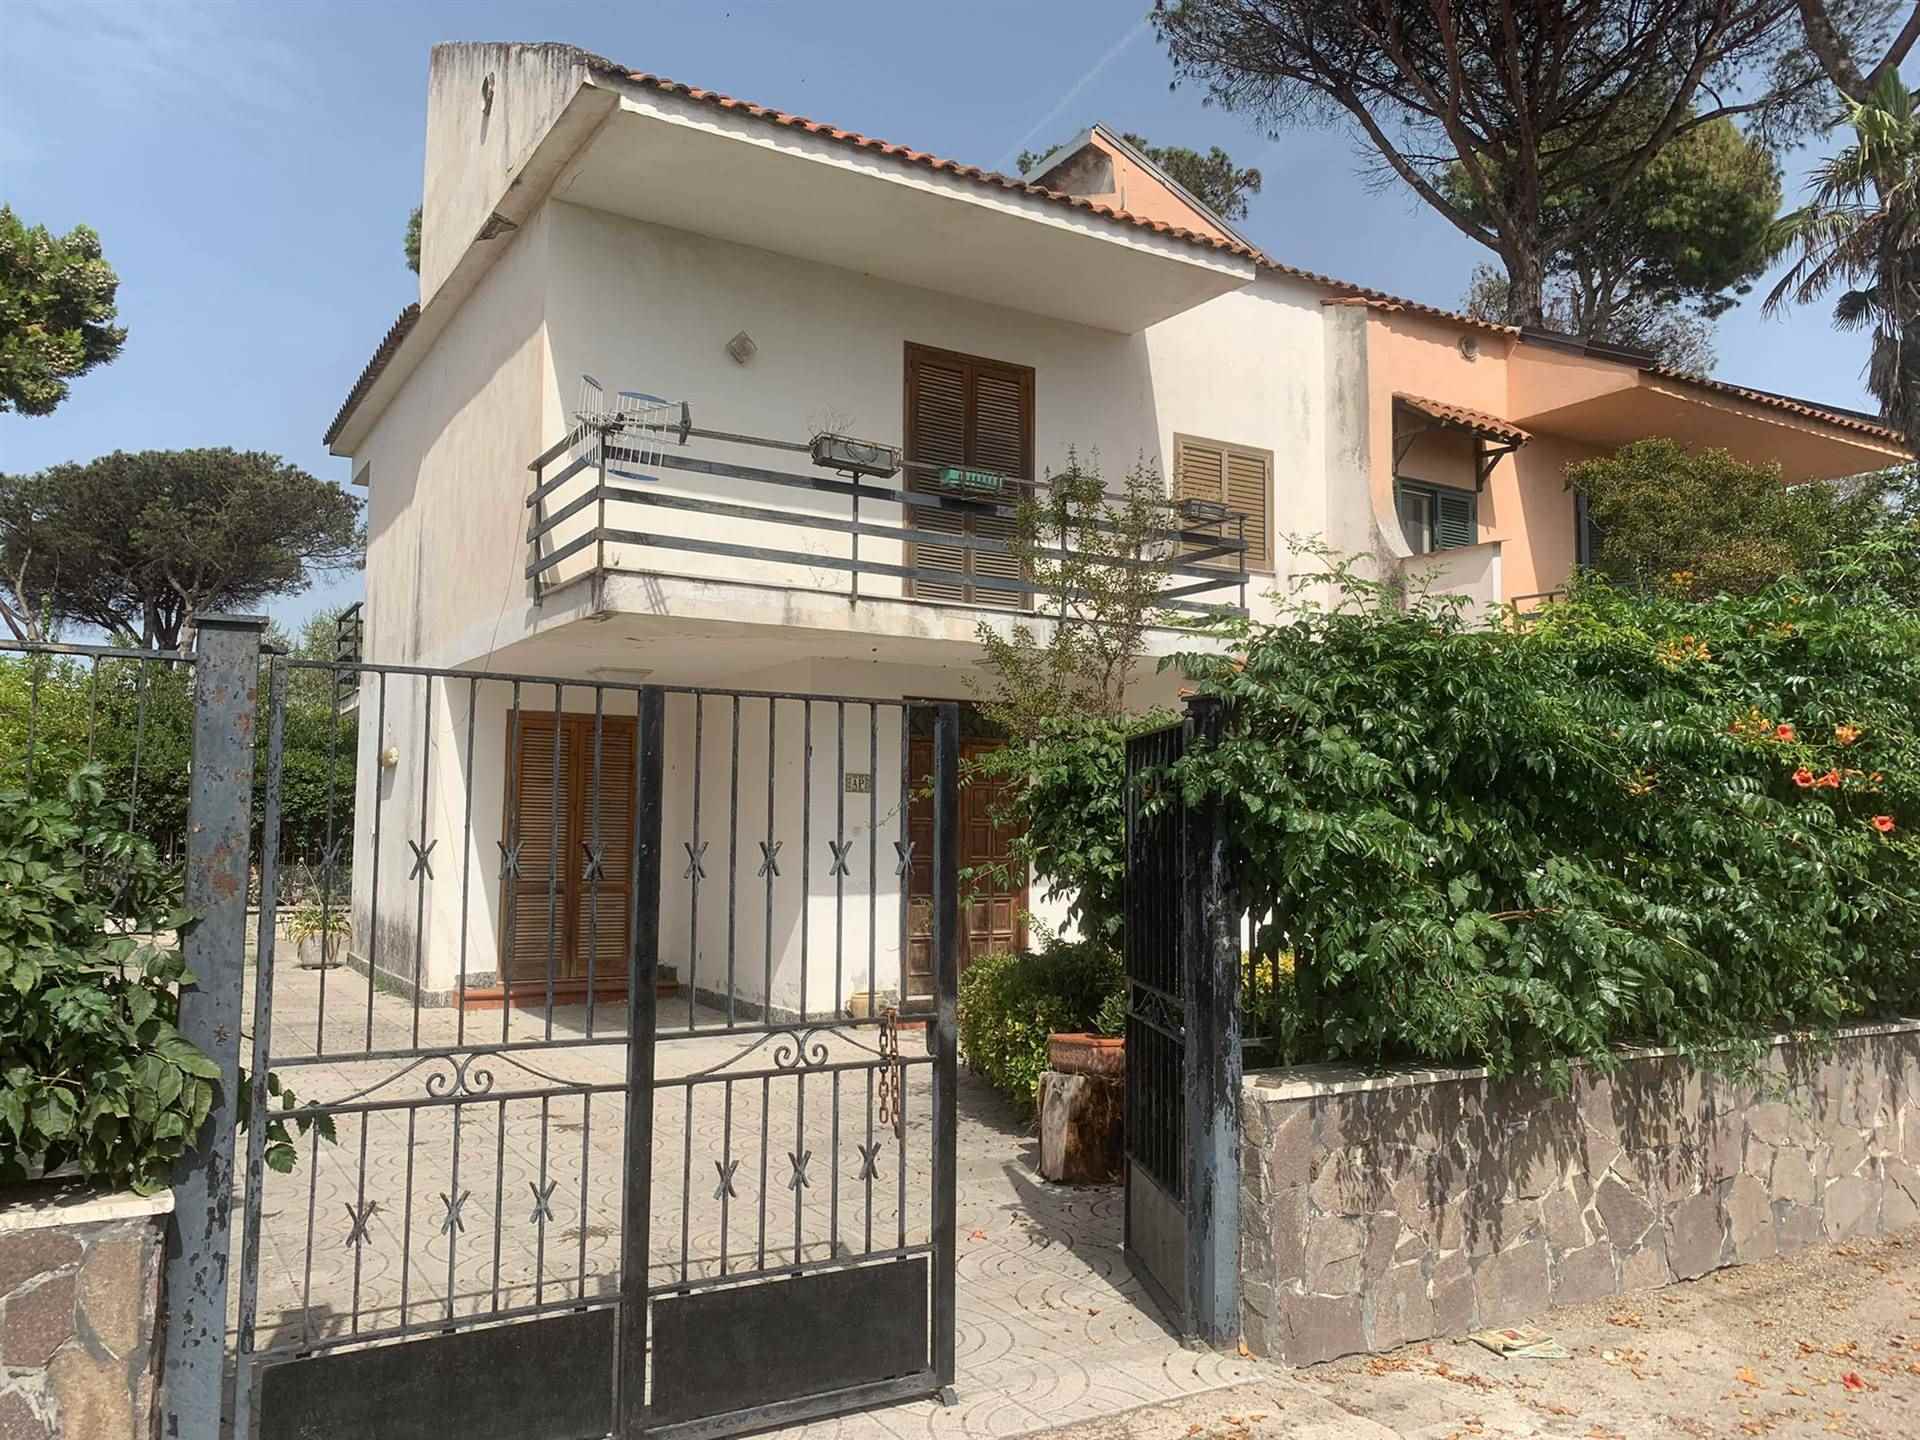 Villa in vendita a Castel Volturno, 4 locali, zona Località: BAIA VERDE - PINETA GRANDE, prezzo € 75.000 | PortaleAgenzieImmobiliari.it